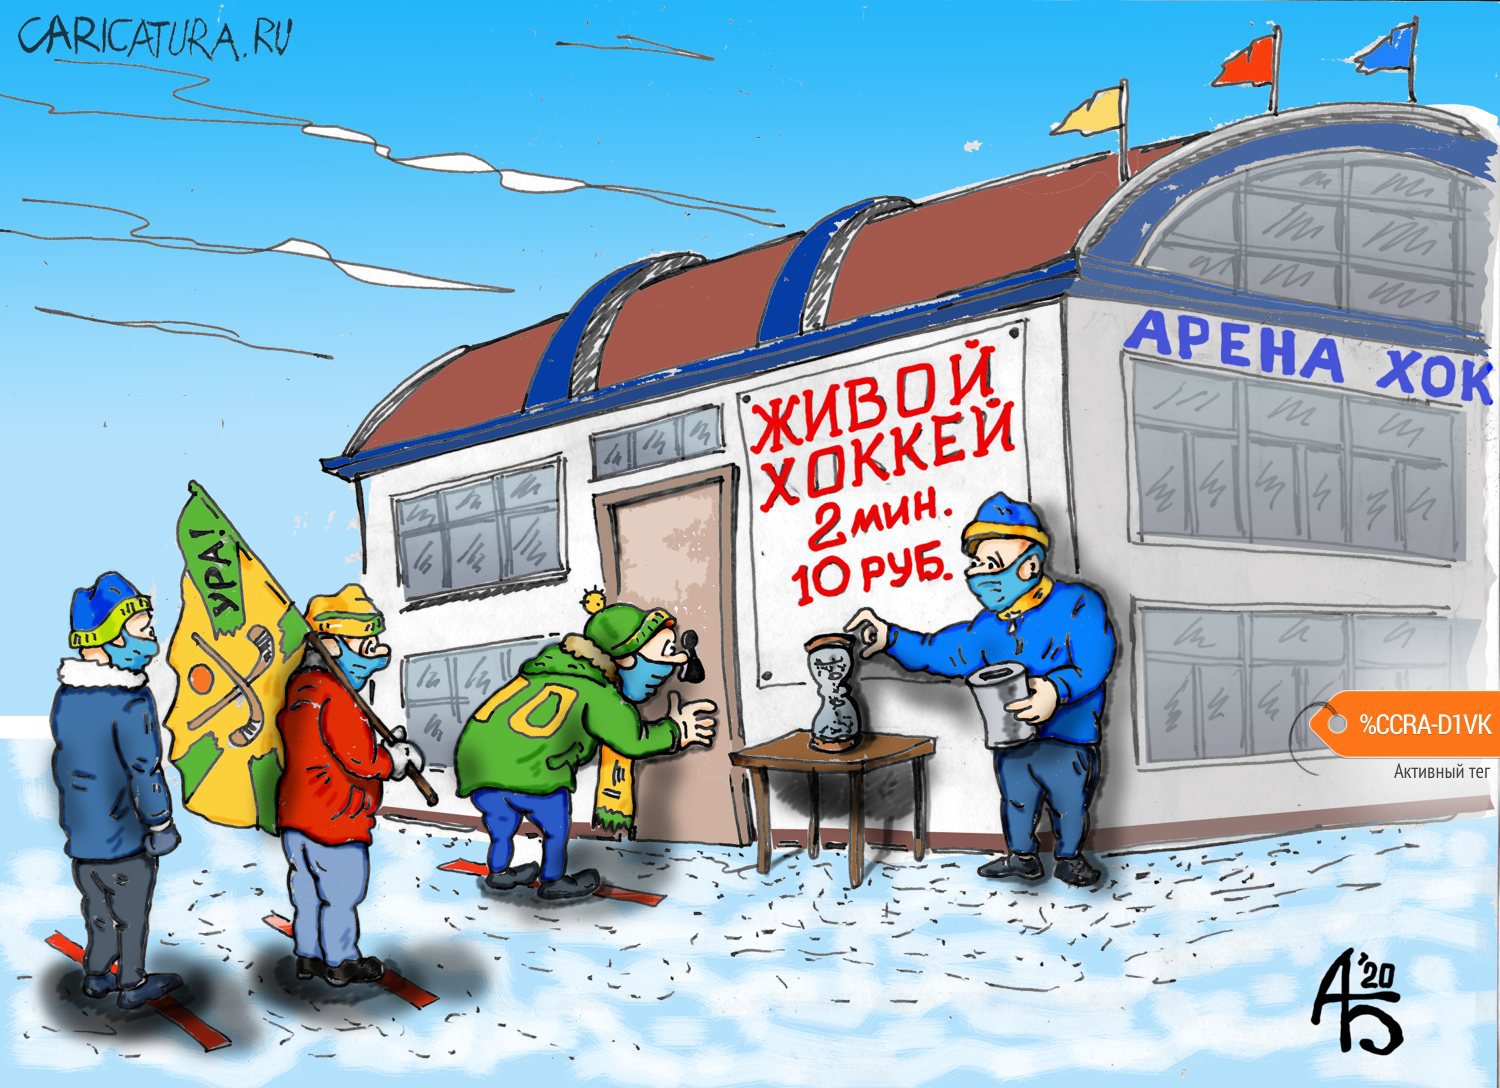 Карикатура "Находчивый предприниматель", Александр Богданов